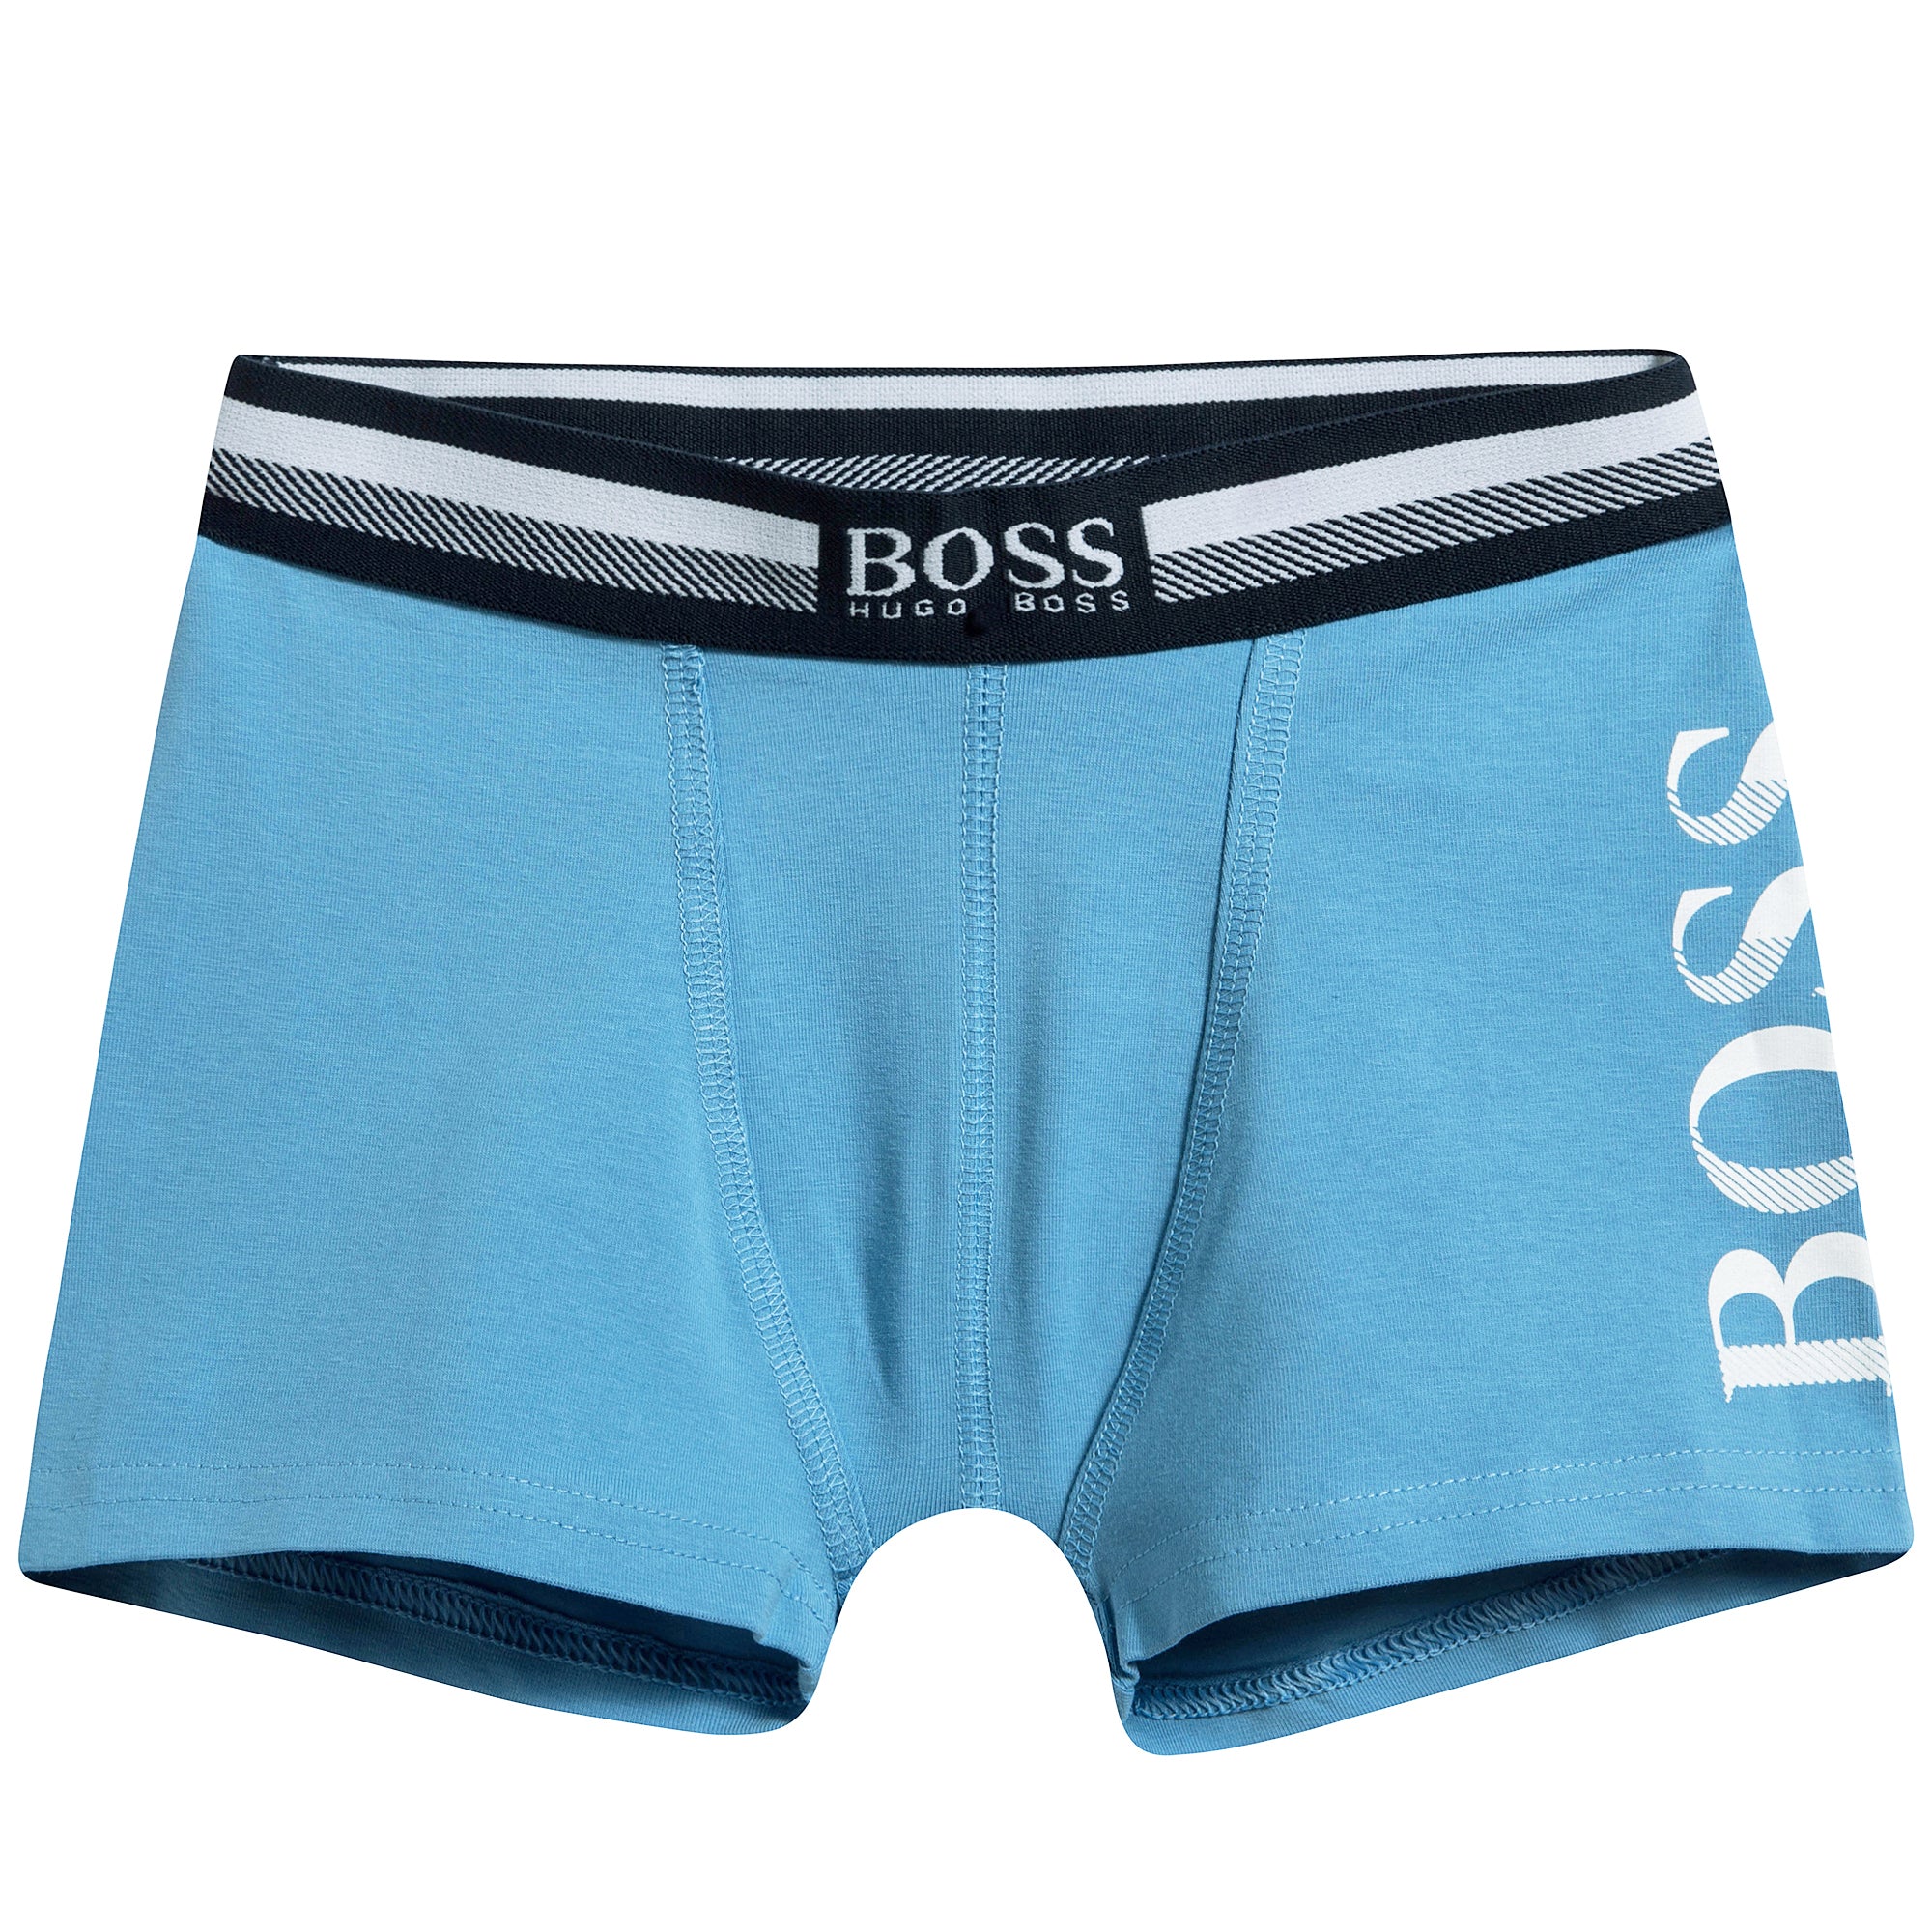 Boys Blue Cotton Logo Underwear